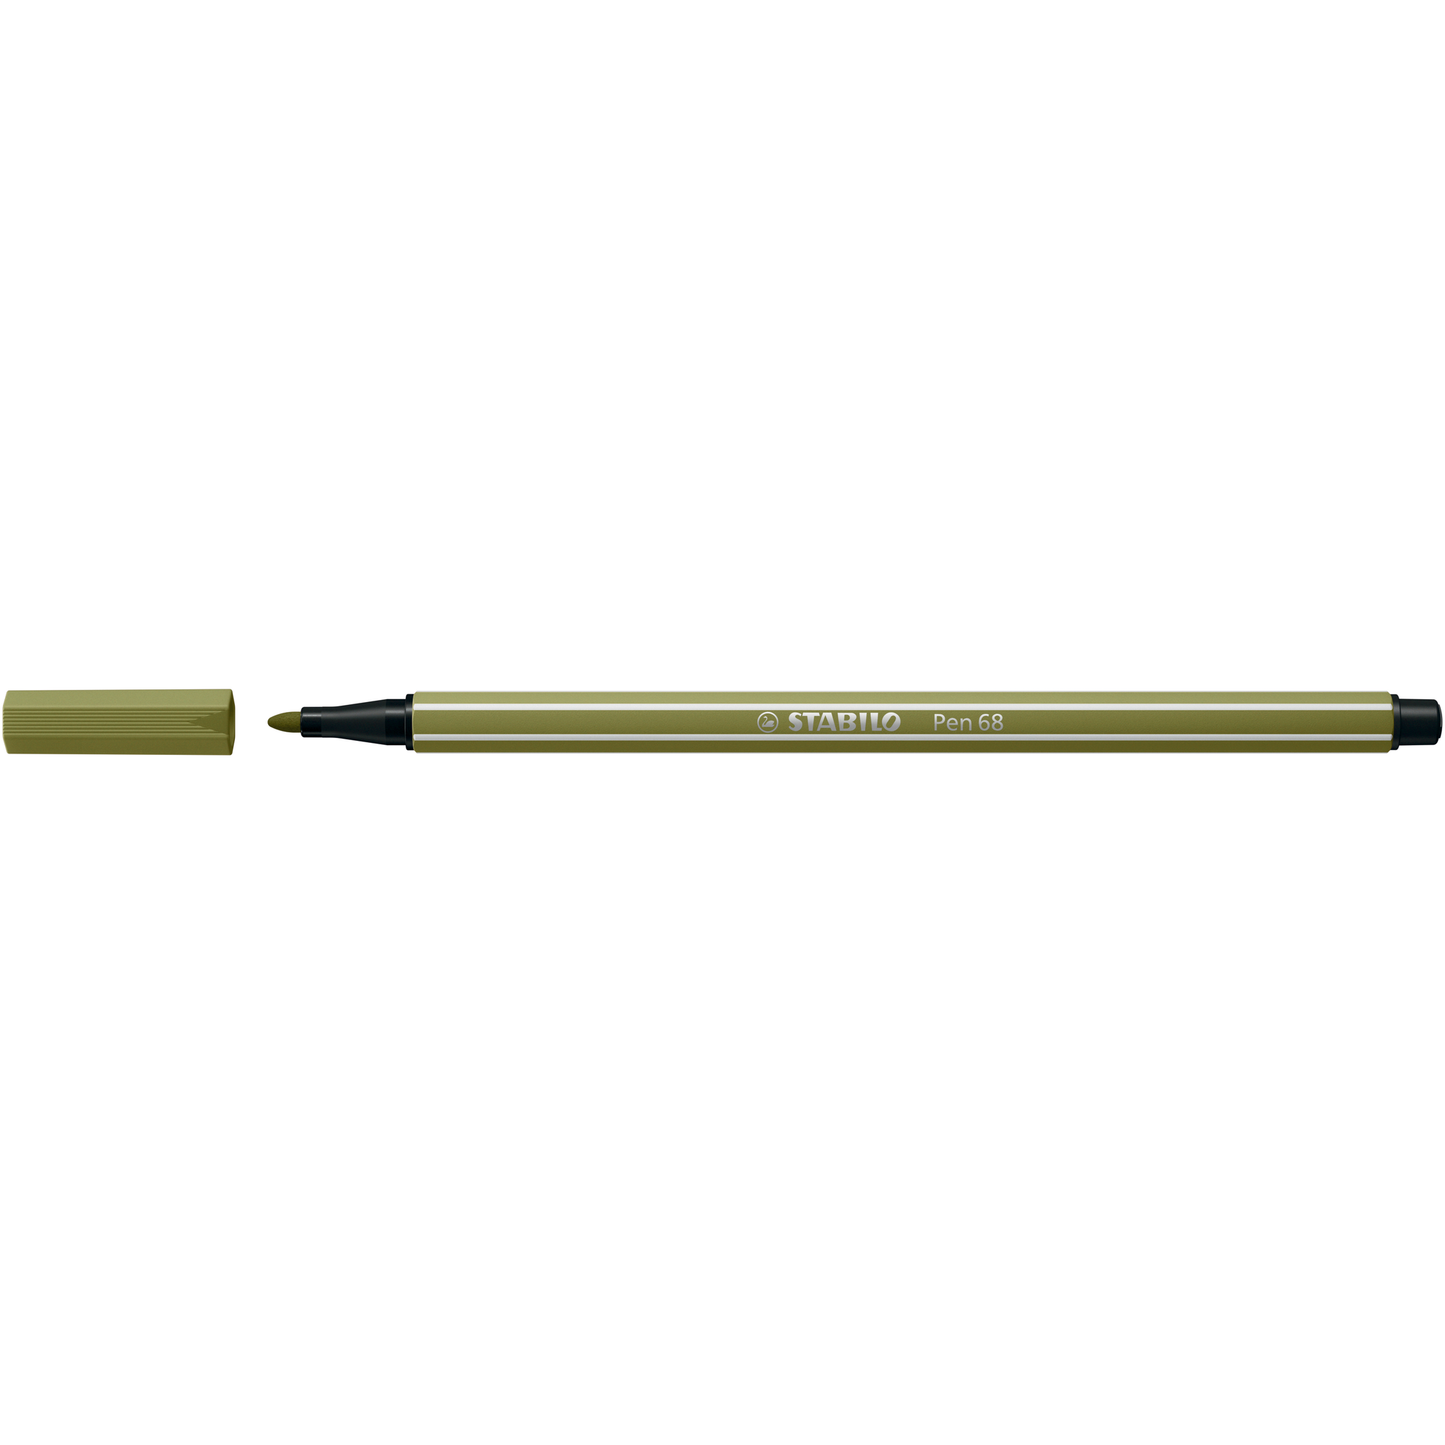 Stabilo Pen 68 Markers – Chrysler Museum of Art